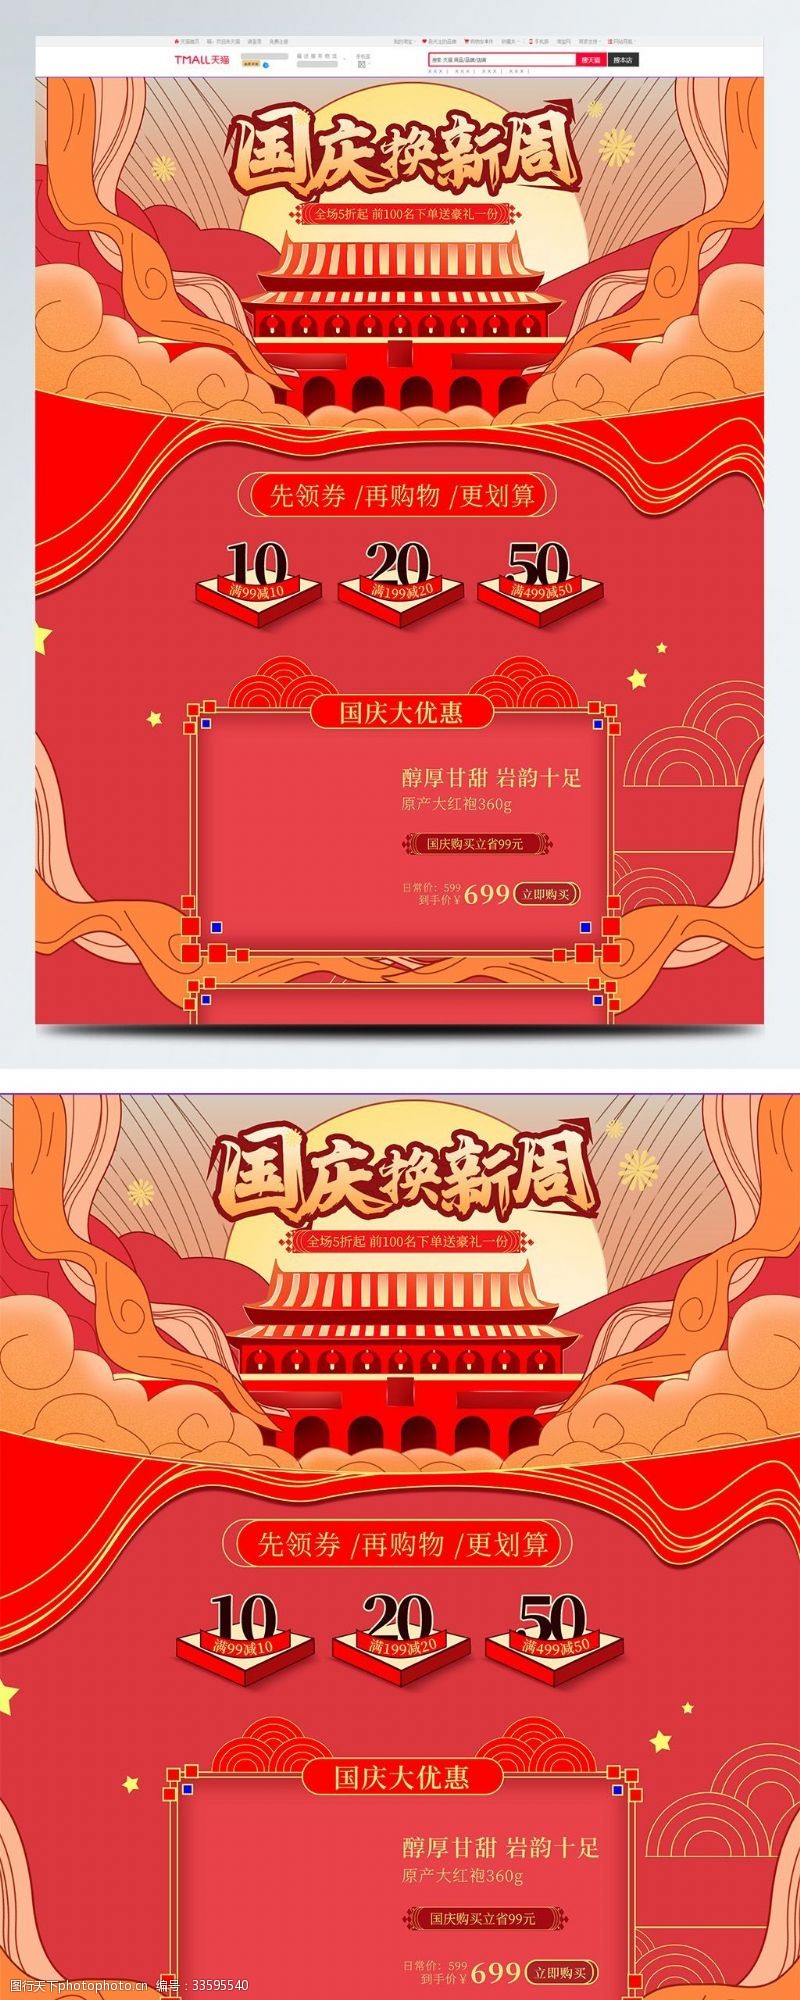 新品模板电商喜庆食品茶饮国庆节换新周首页海报模板